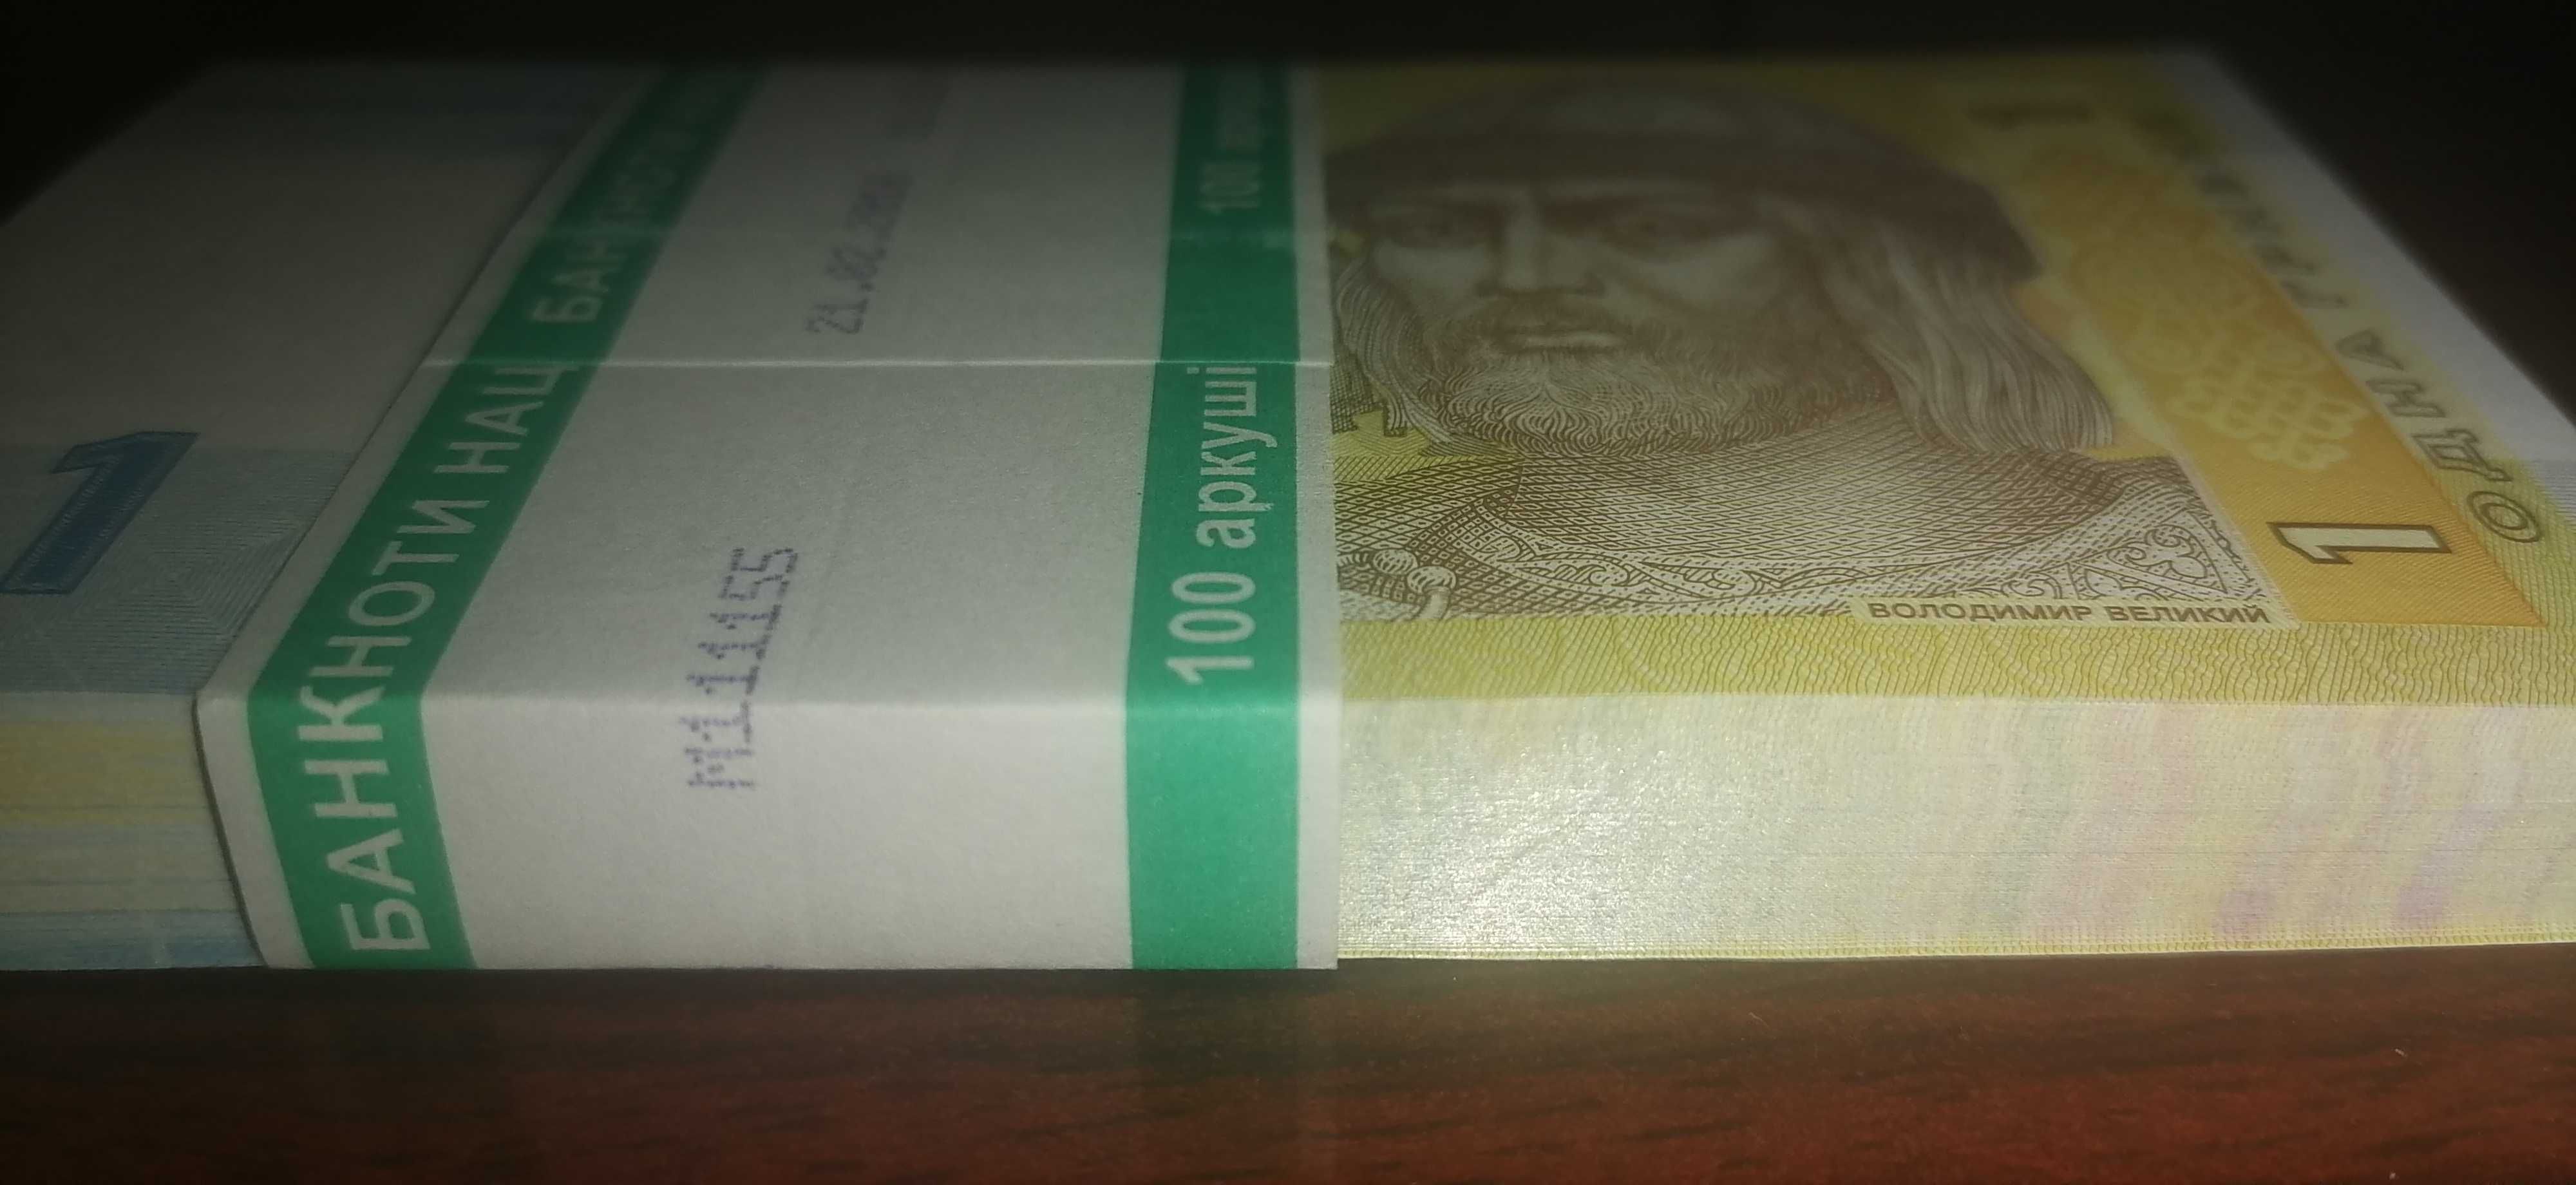 1 гривна Украйна, 2014, UNC от пачка, чисто нови